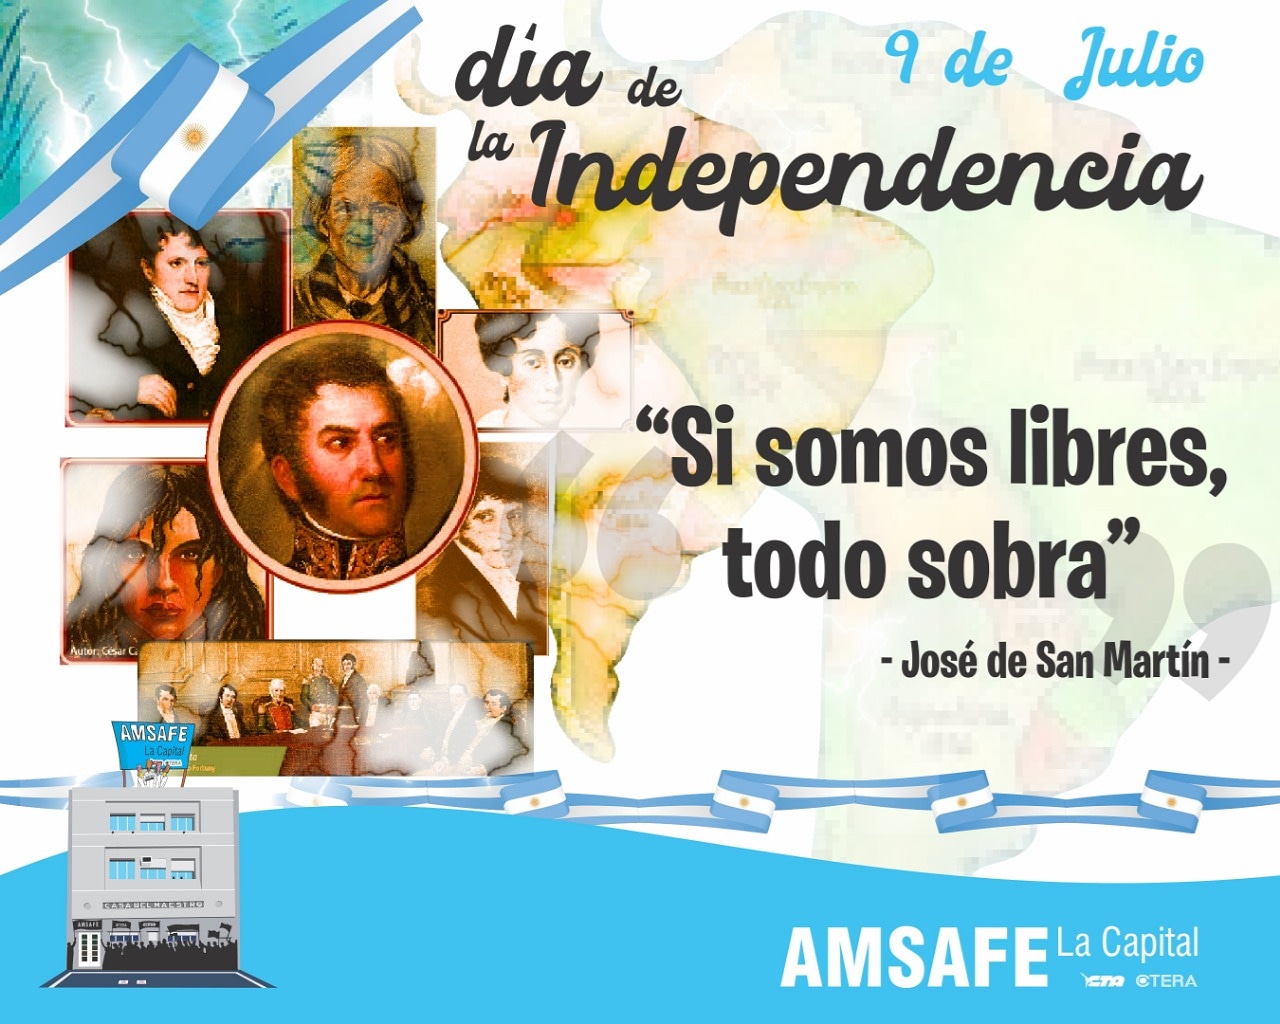 9 de Julio de 1816 - Declaración de la Independencia Argentina- - Página 2 IMG-20210709-WA0003